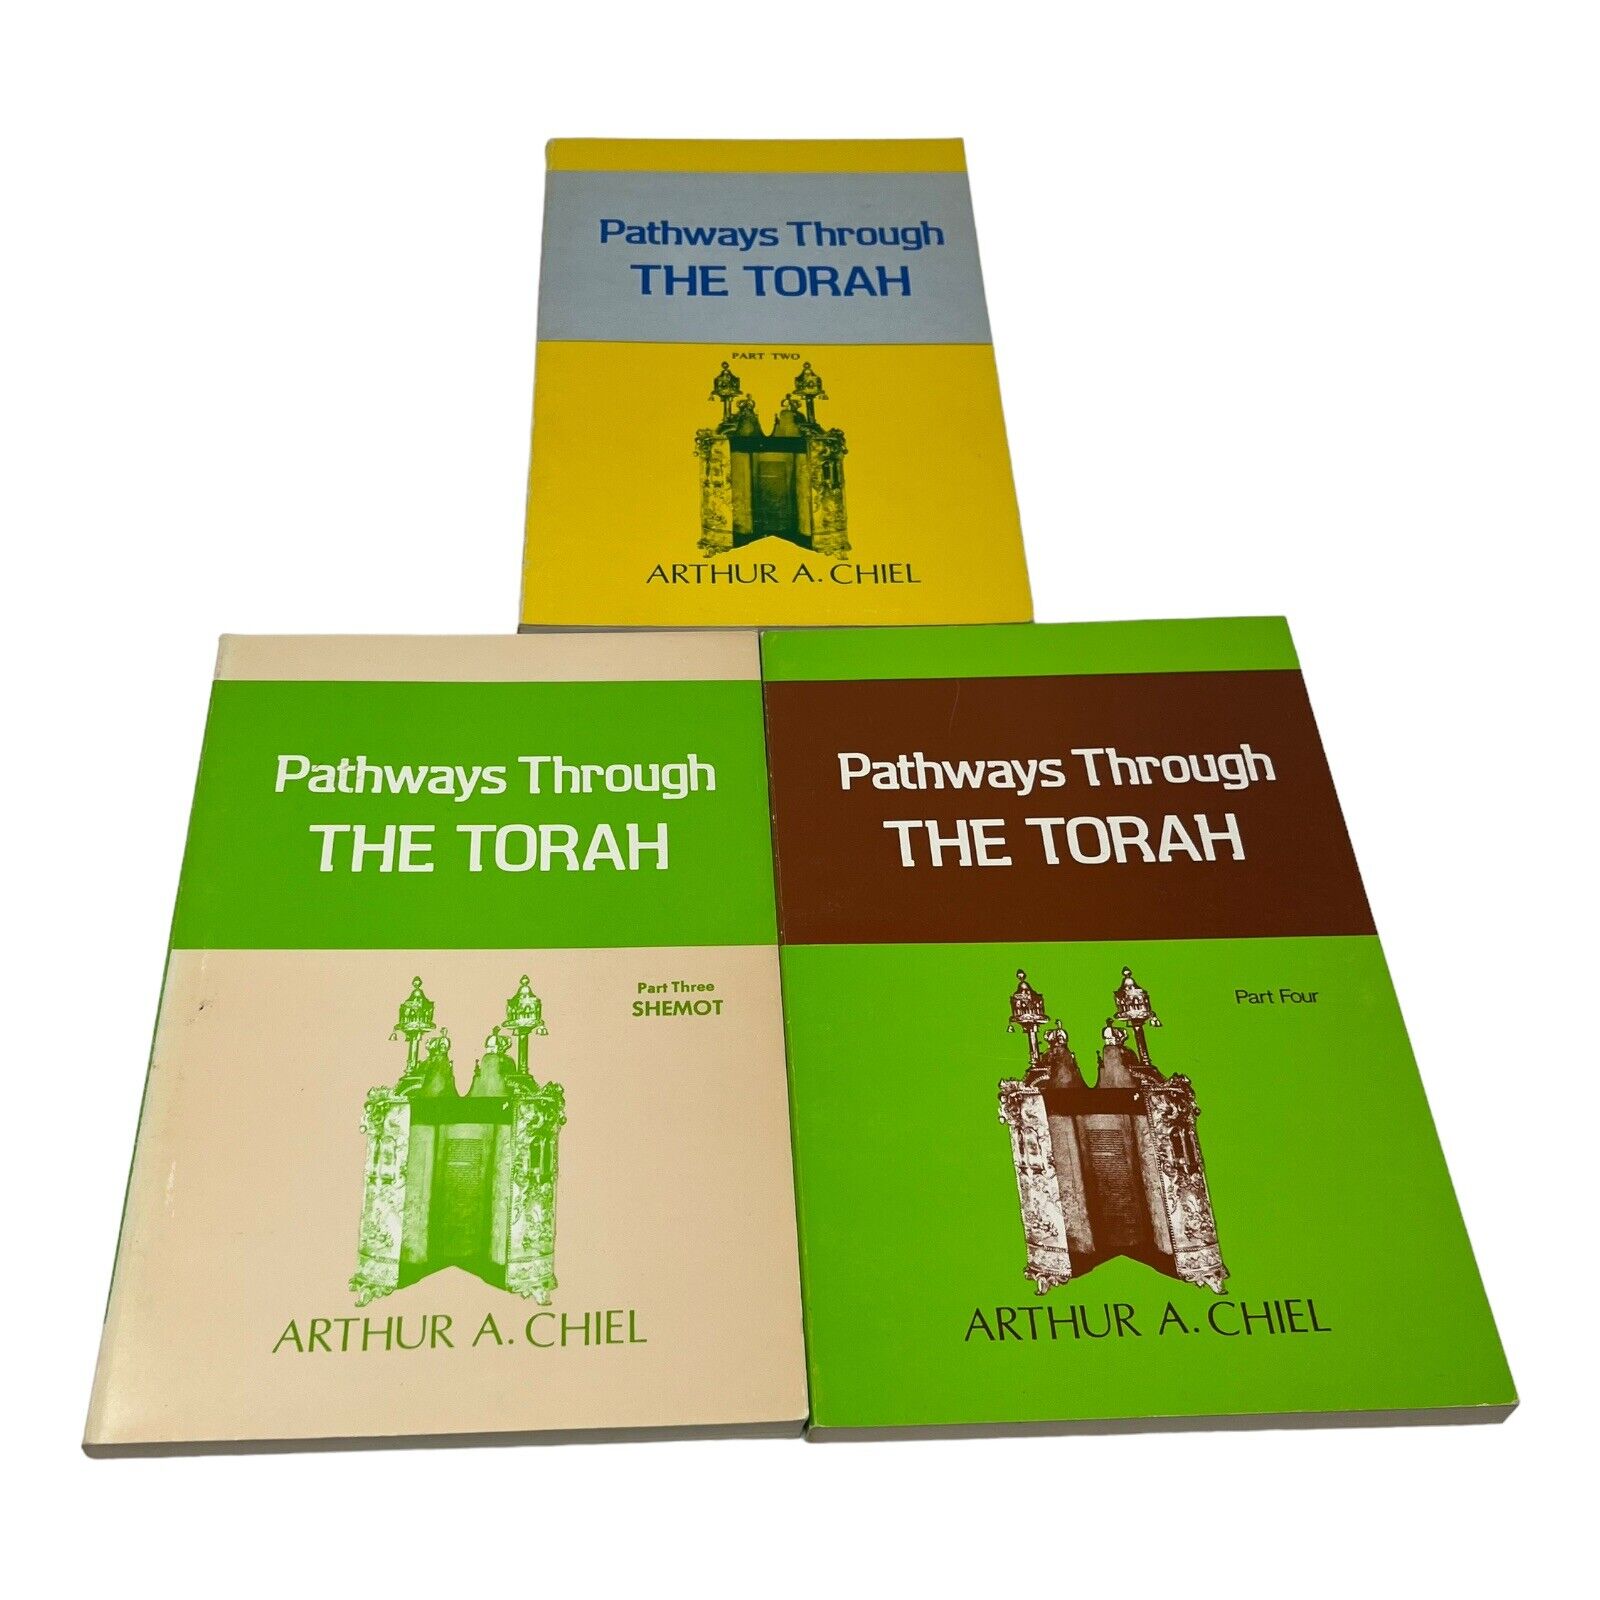 RARE Pathways through the Torah by Arthur A Chiel PART 2, PART 3 & PART 4 Books